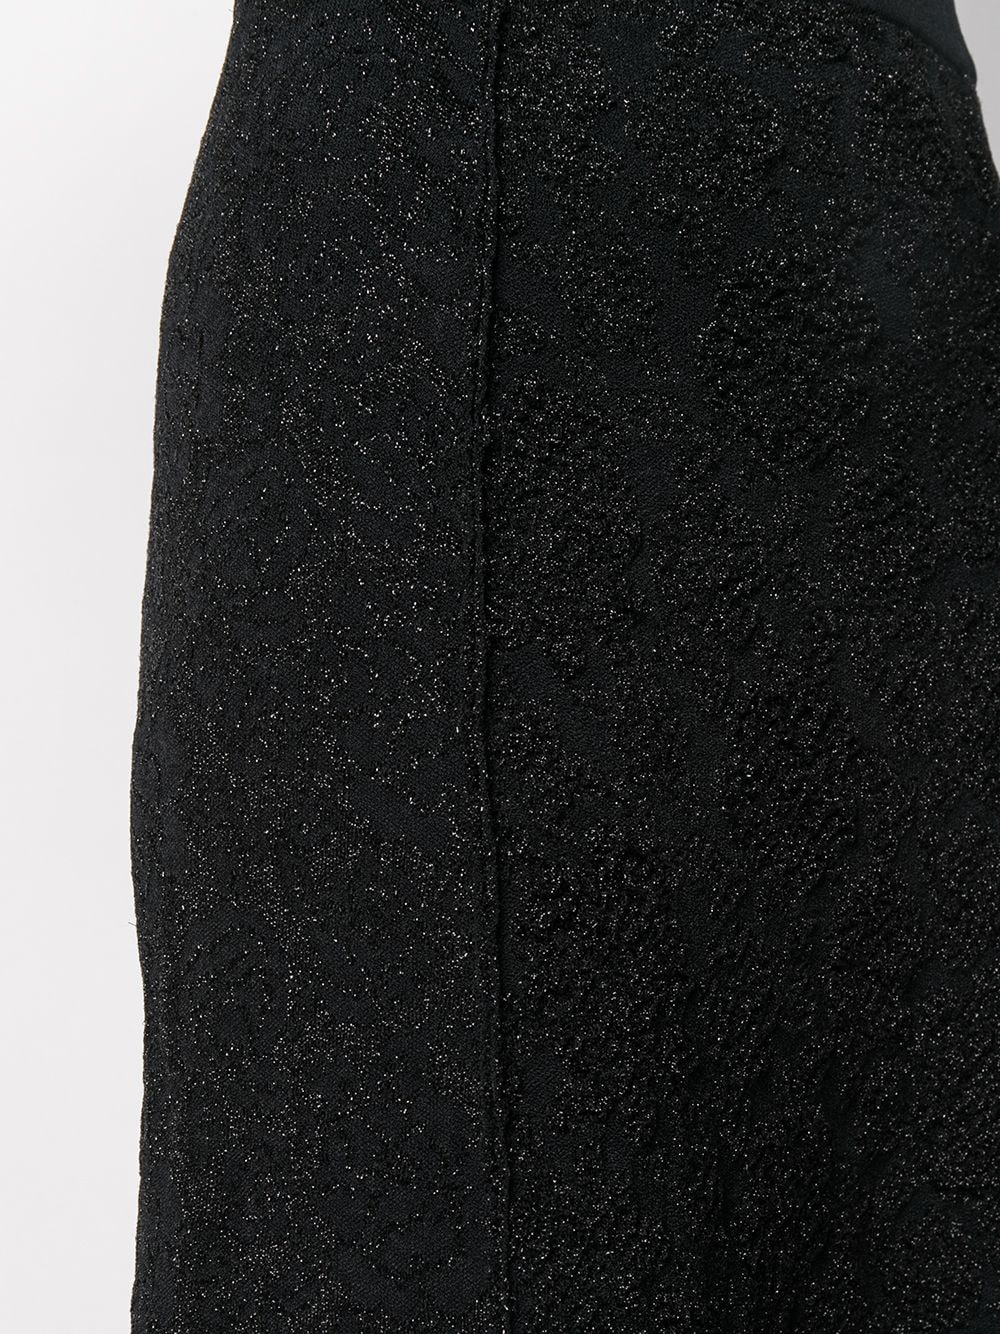 фото Moschino юбка с оборками и эффектом металлик